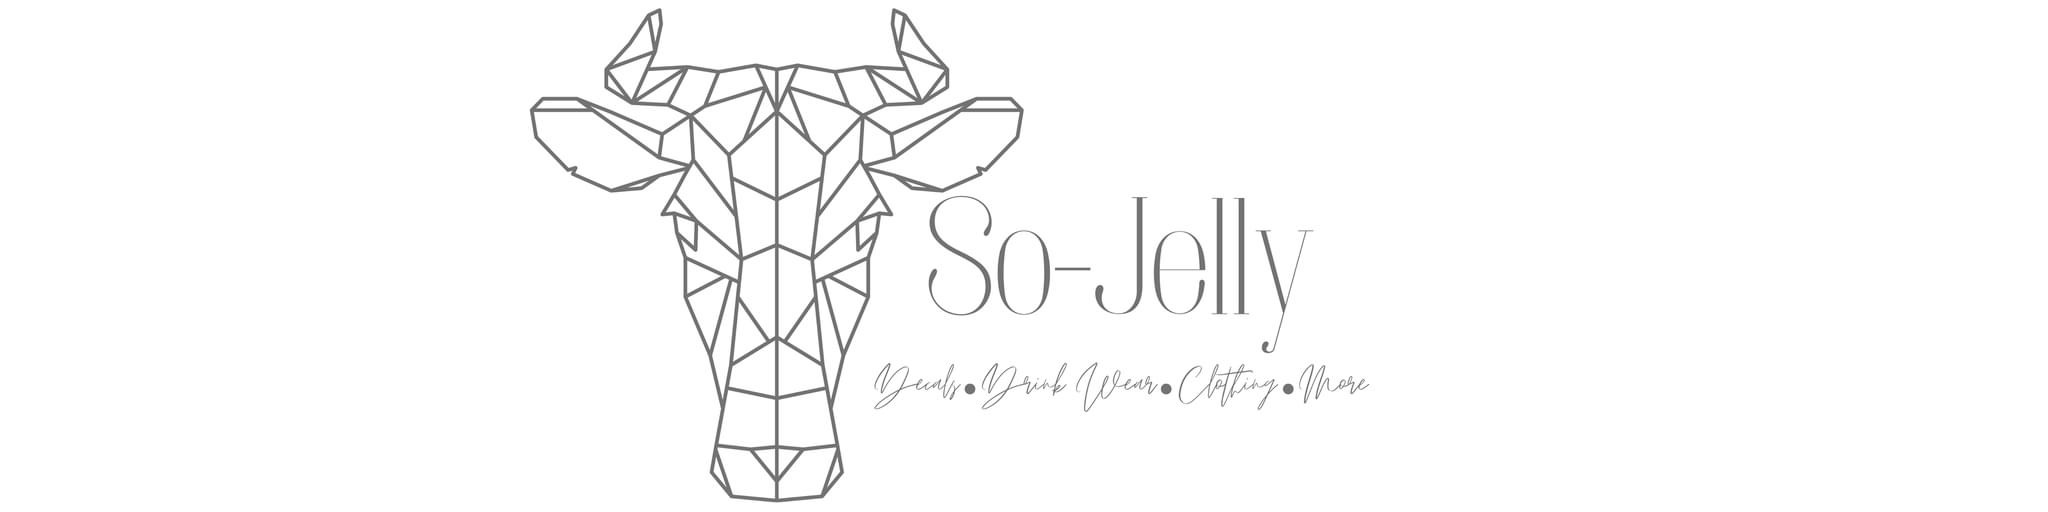 So-jelly